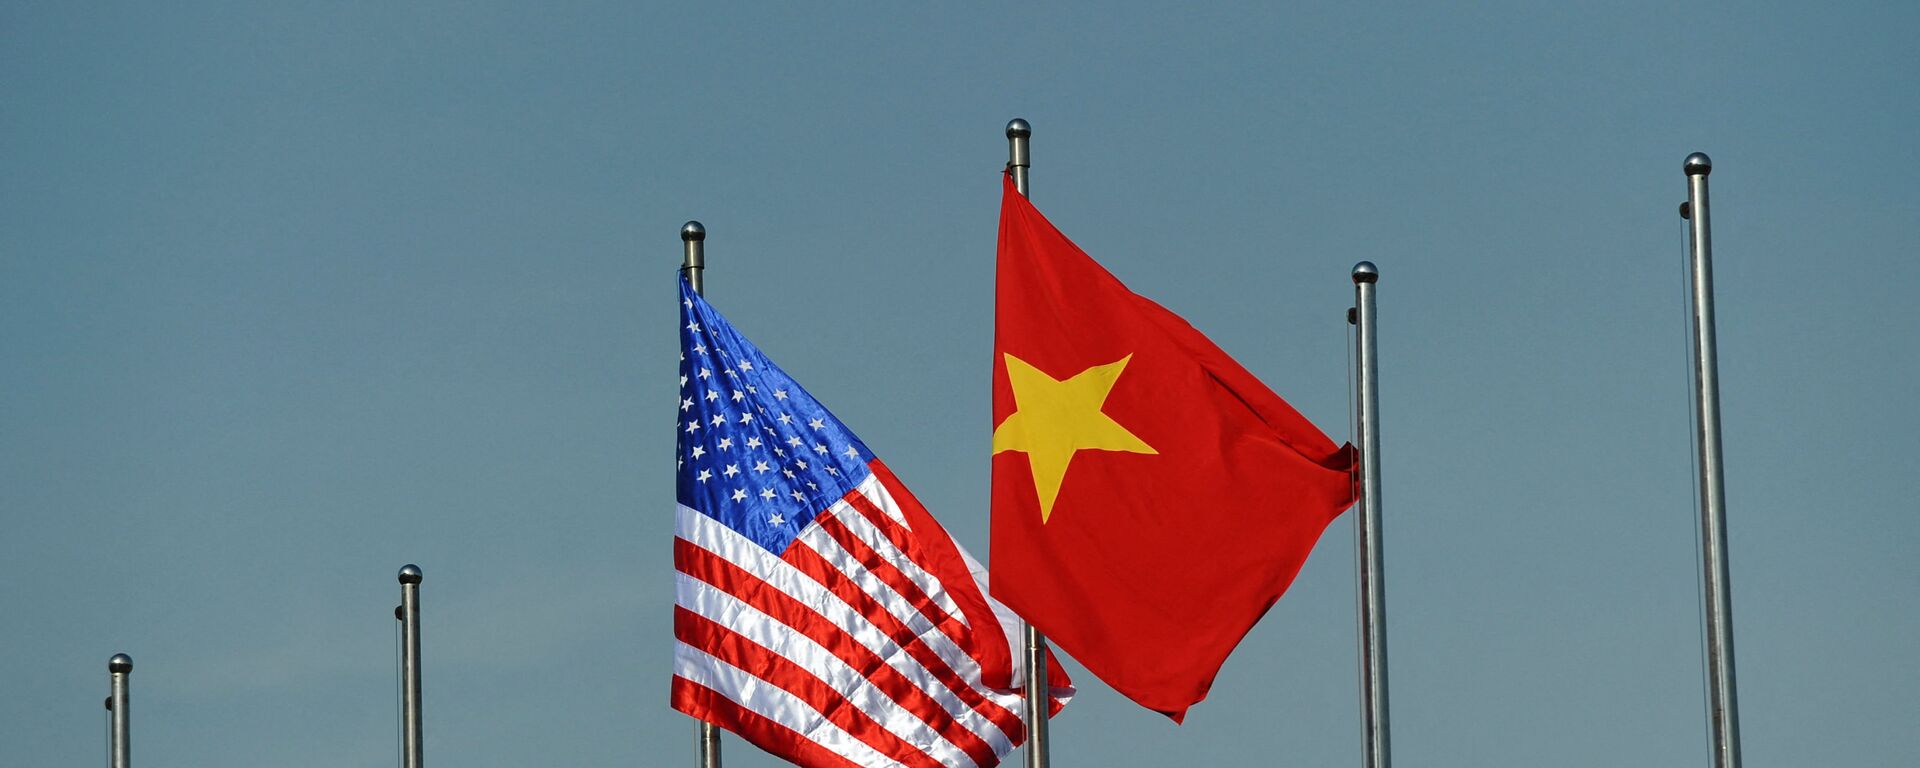 Quốc kỳ của Hoa Kỳ và Việt Nam. - Sputnik Việt Nam, 1920, 29.04.2021